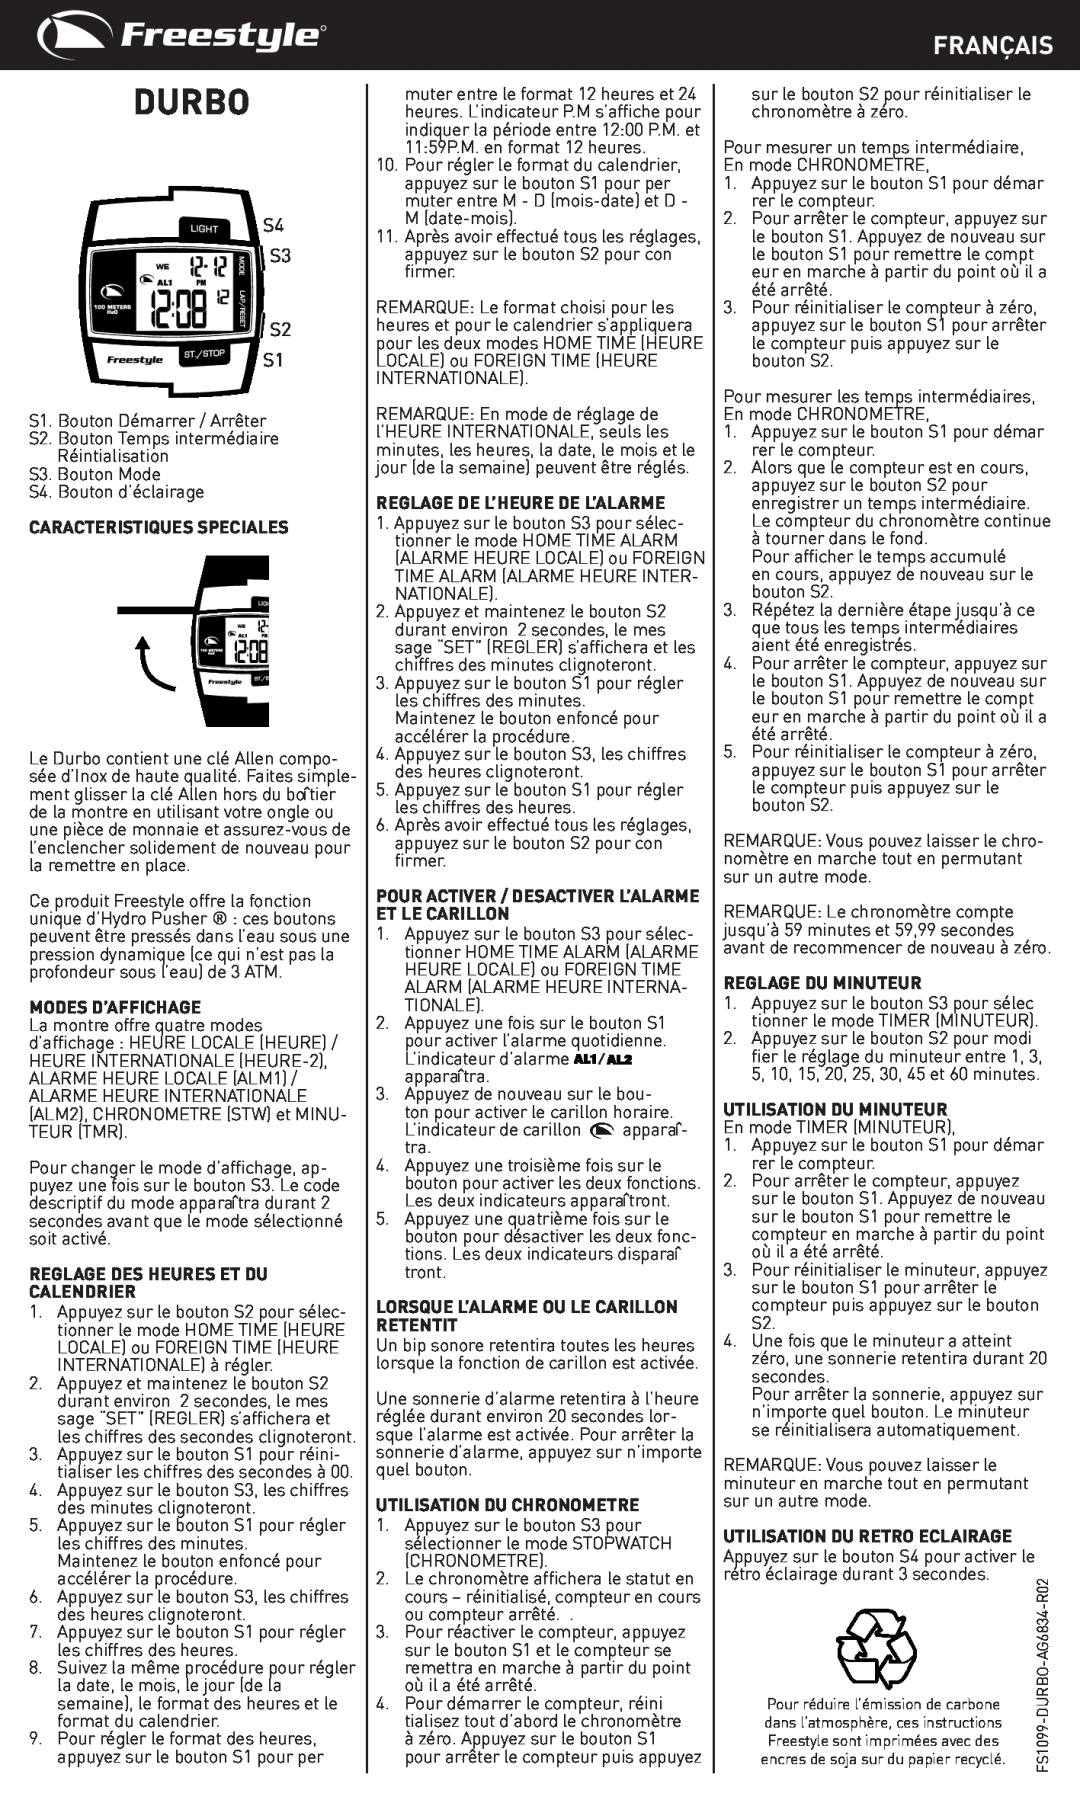 Freestyle Durbo manual Français, S4 S3 S2 S1 